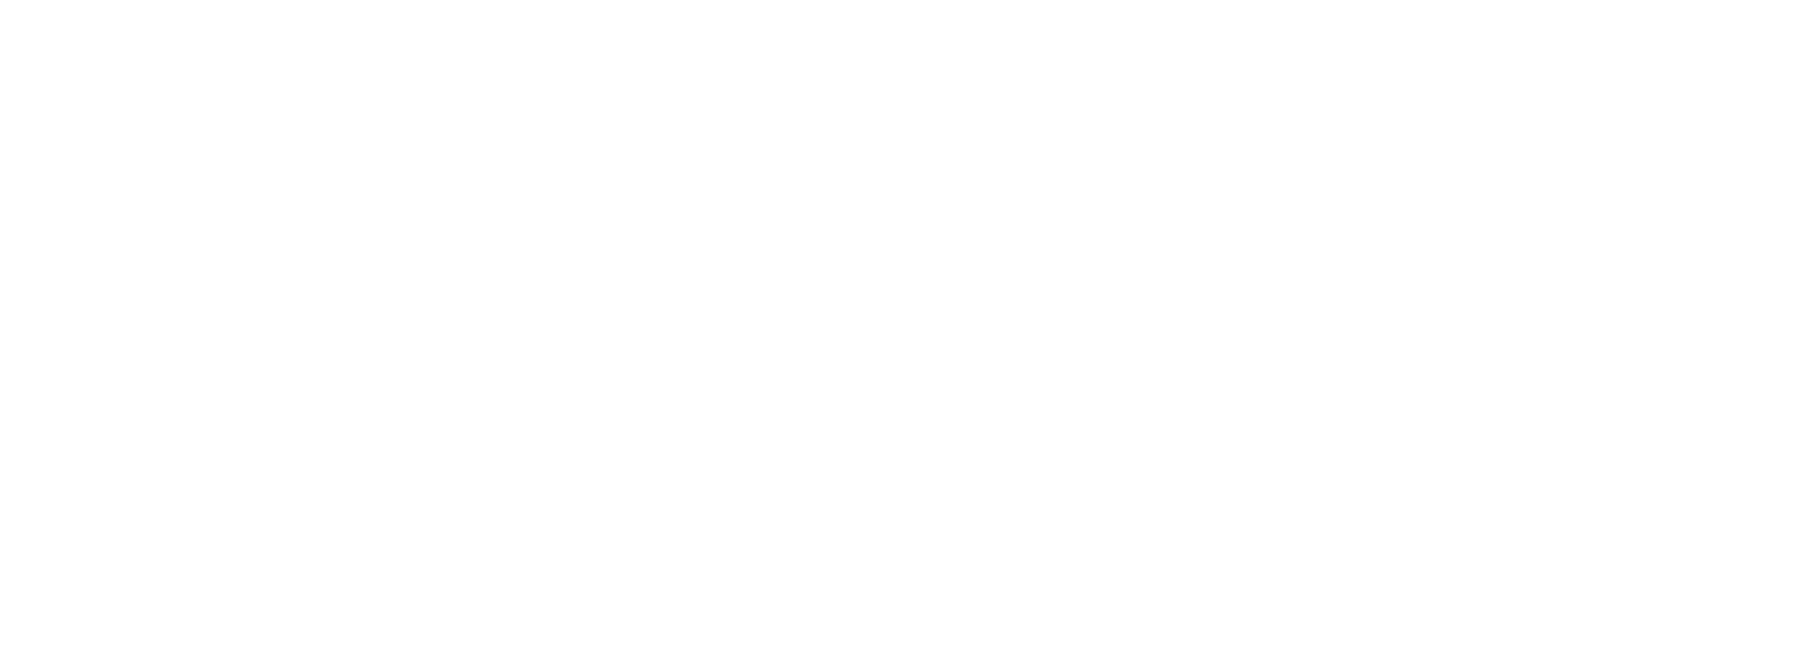 And Ibm Pattern Black Logo White PNG Image